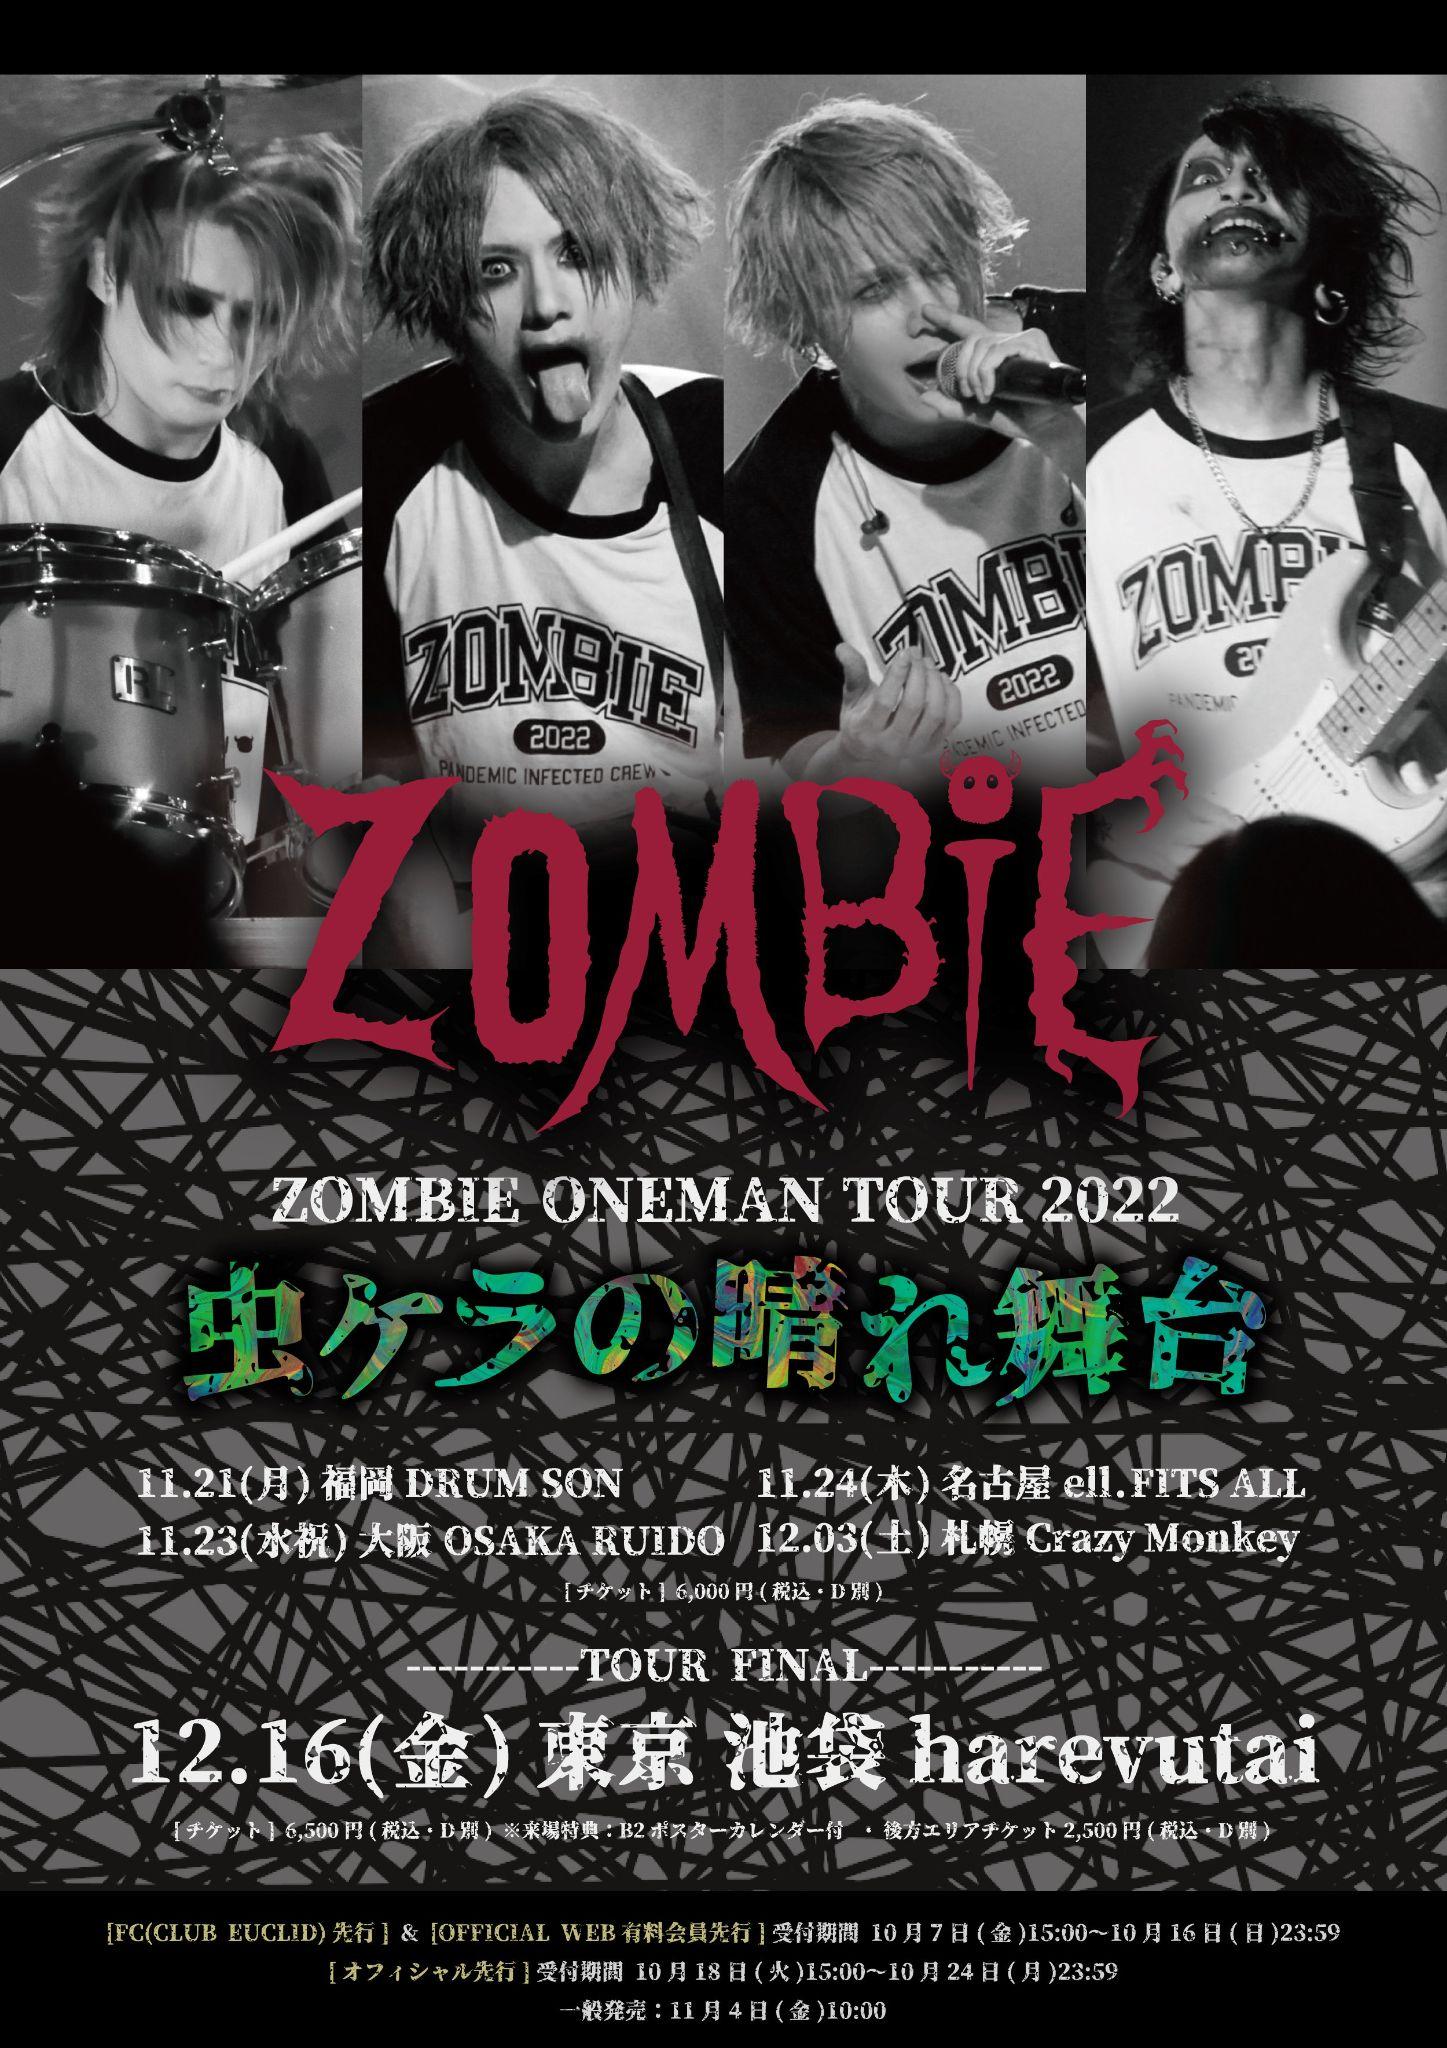 word image 2453 2 1 - 【Live Report】ZOMBIE. “MUSHIKERA NO HAREVUTAI TOUR” (OSAKA RUIDO) - Nippongaku